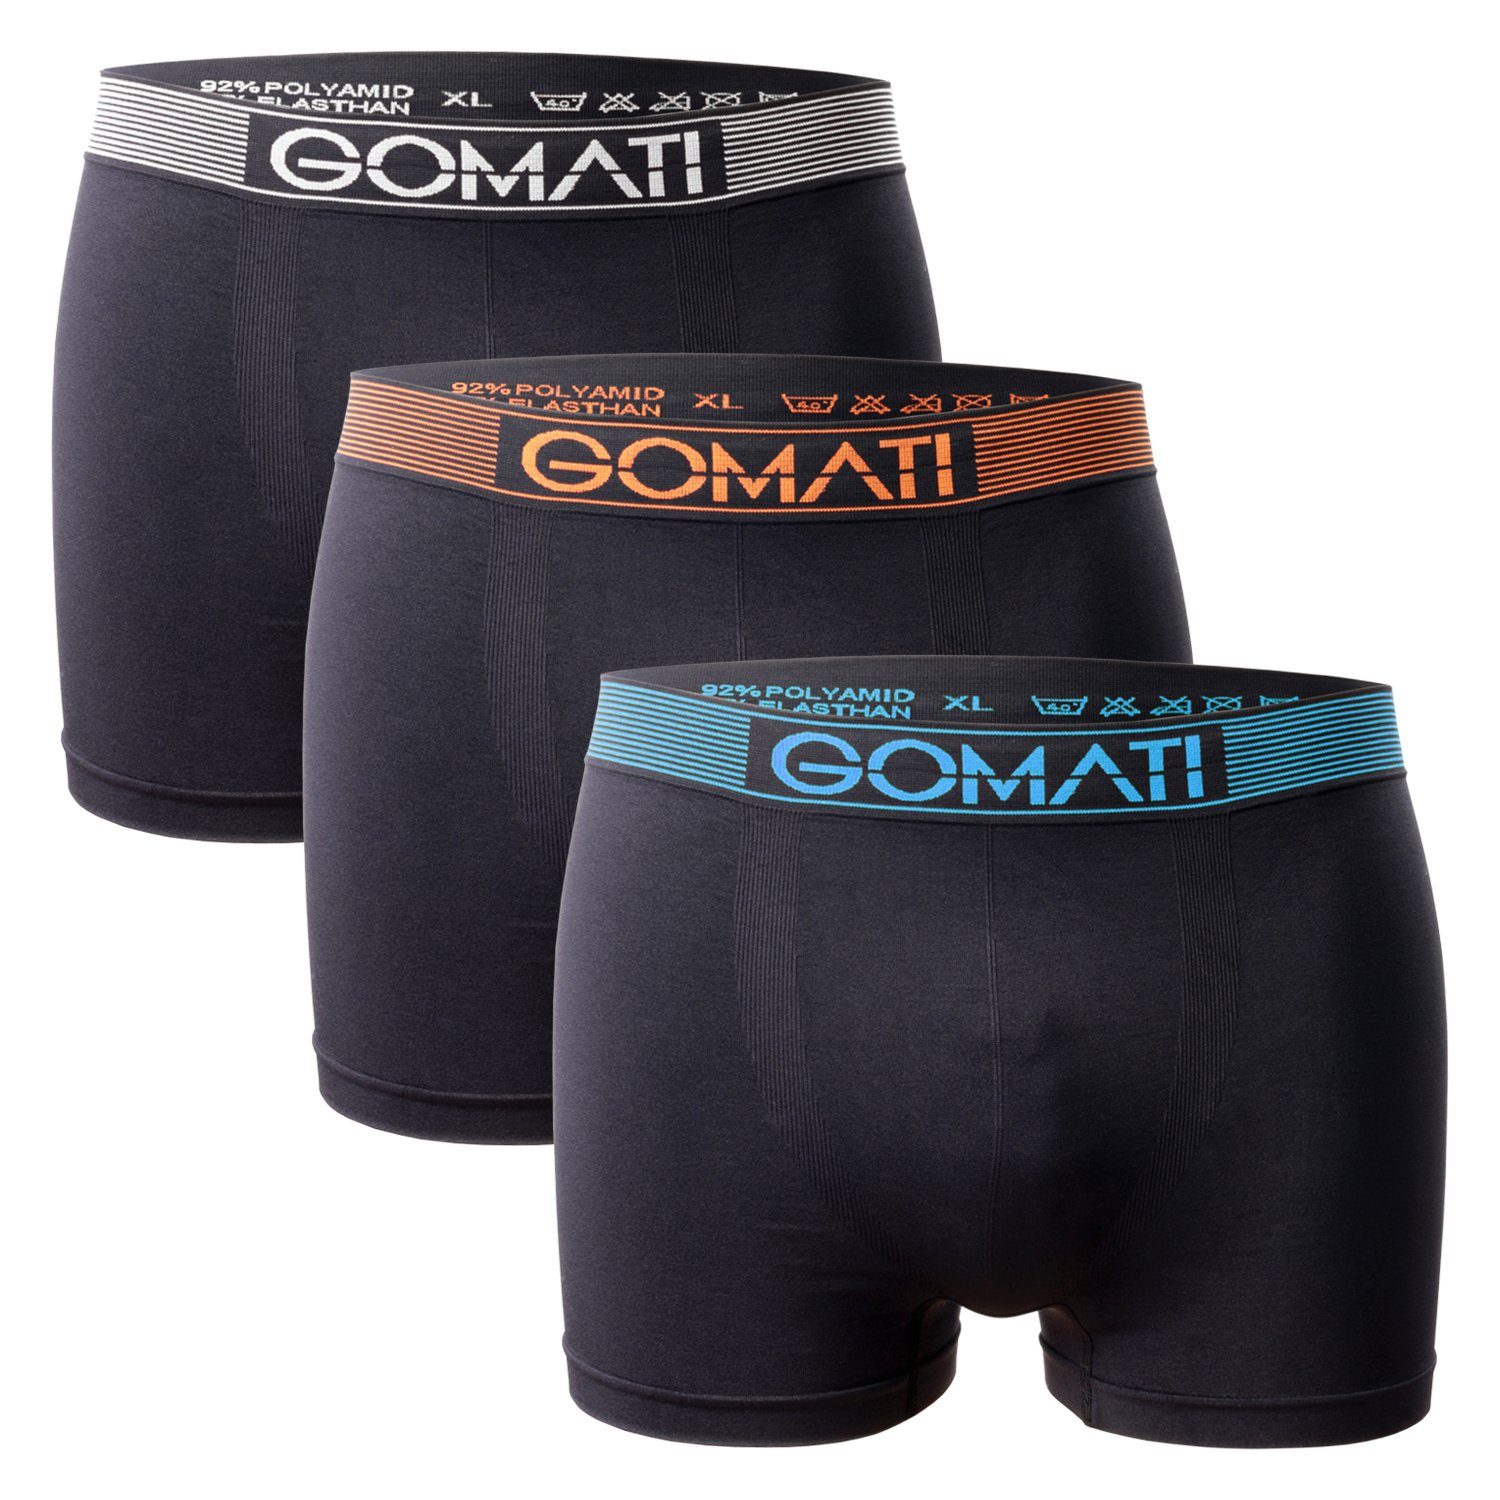 Gomati Boxershorts Herren Boxershorts Pack) Seamless Black Mix Microfaser-Elasthan Pants (3er